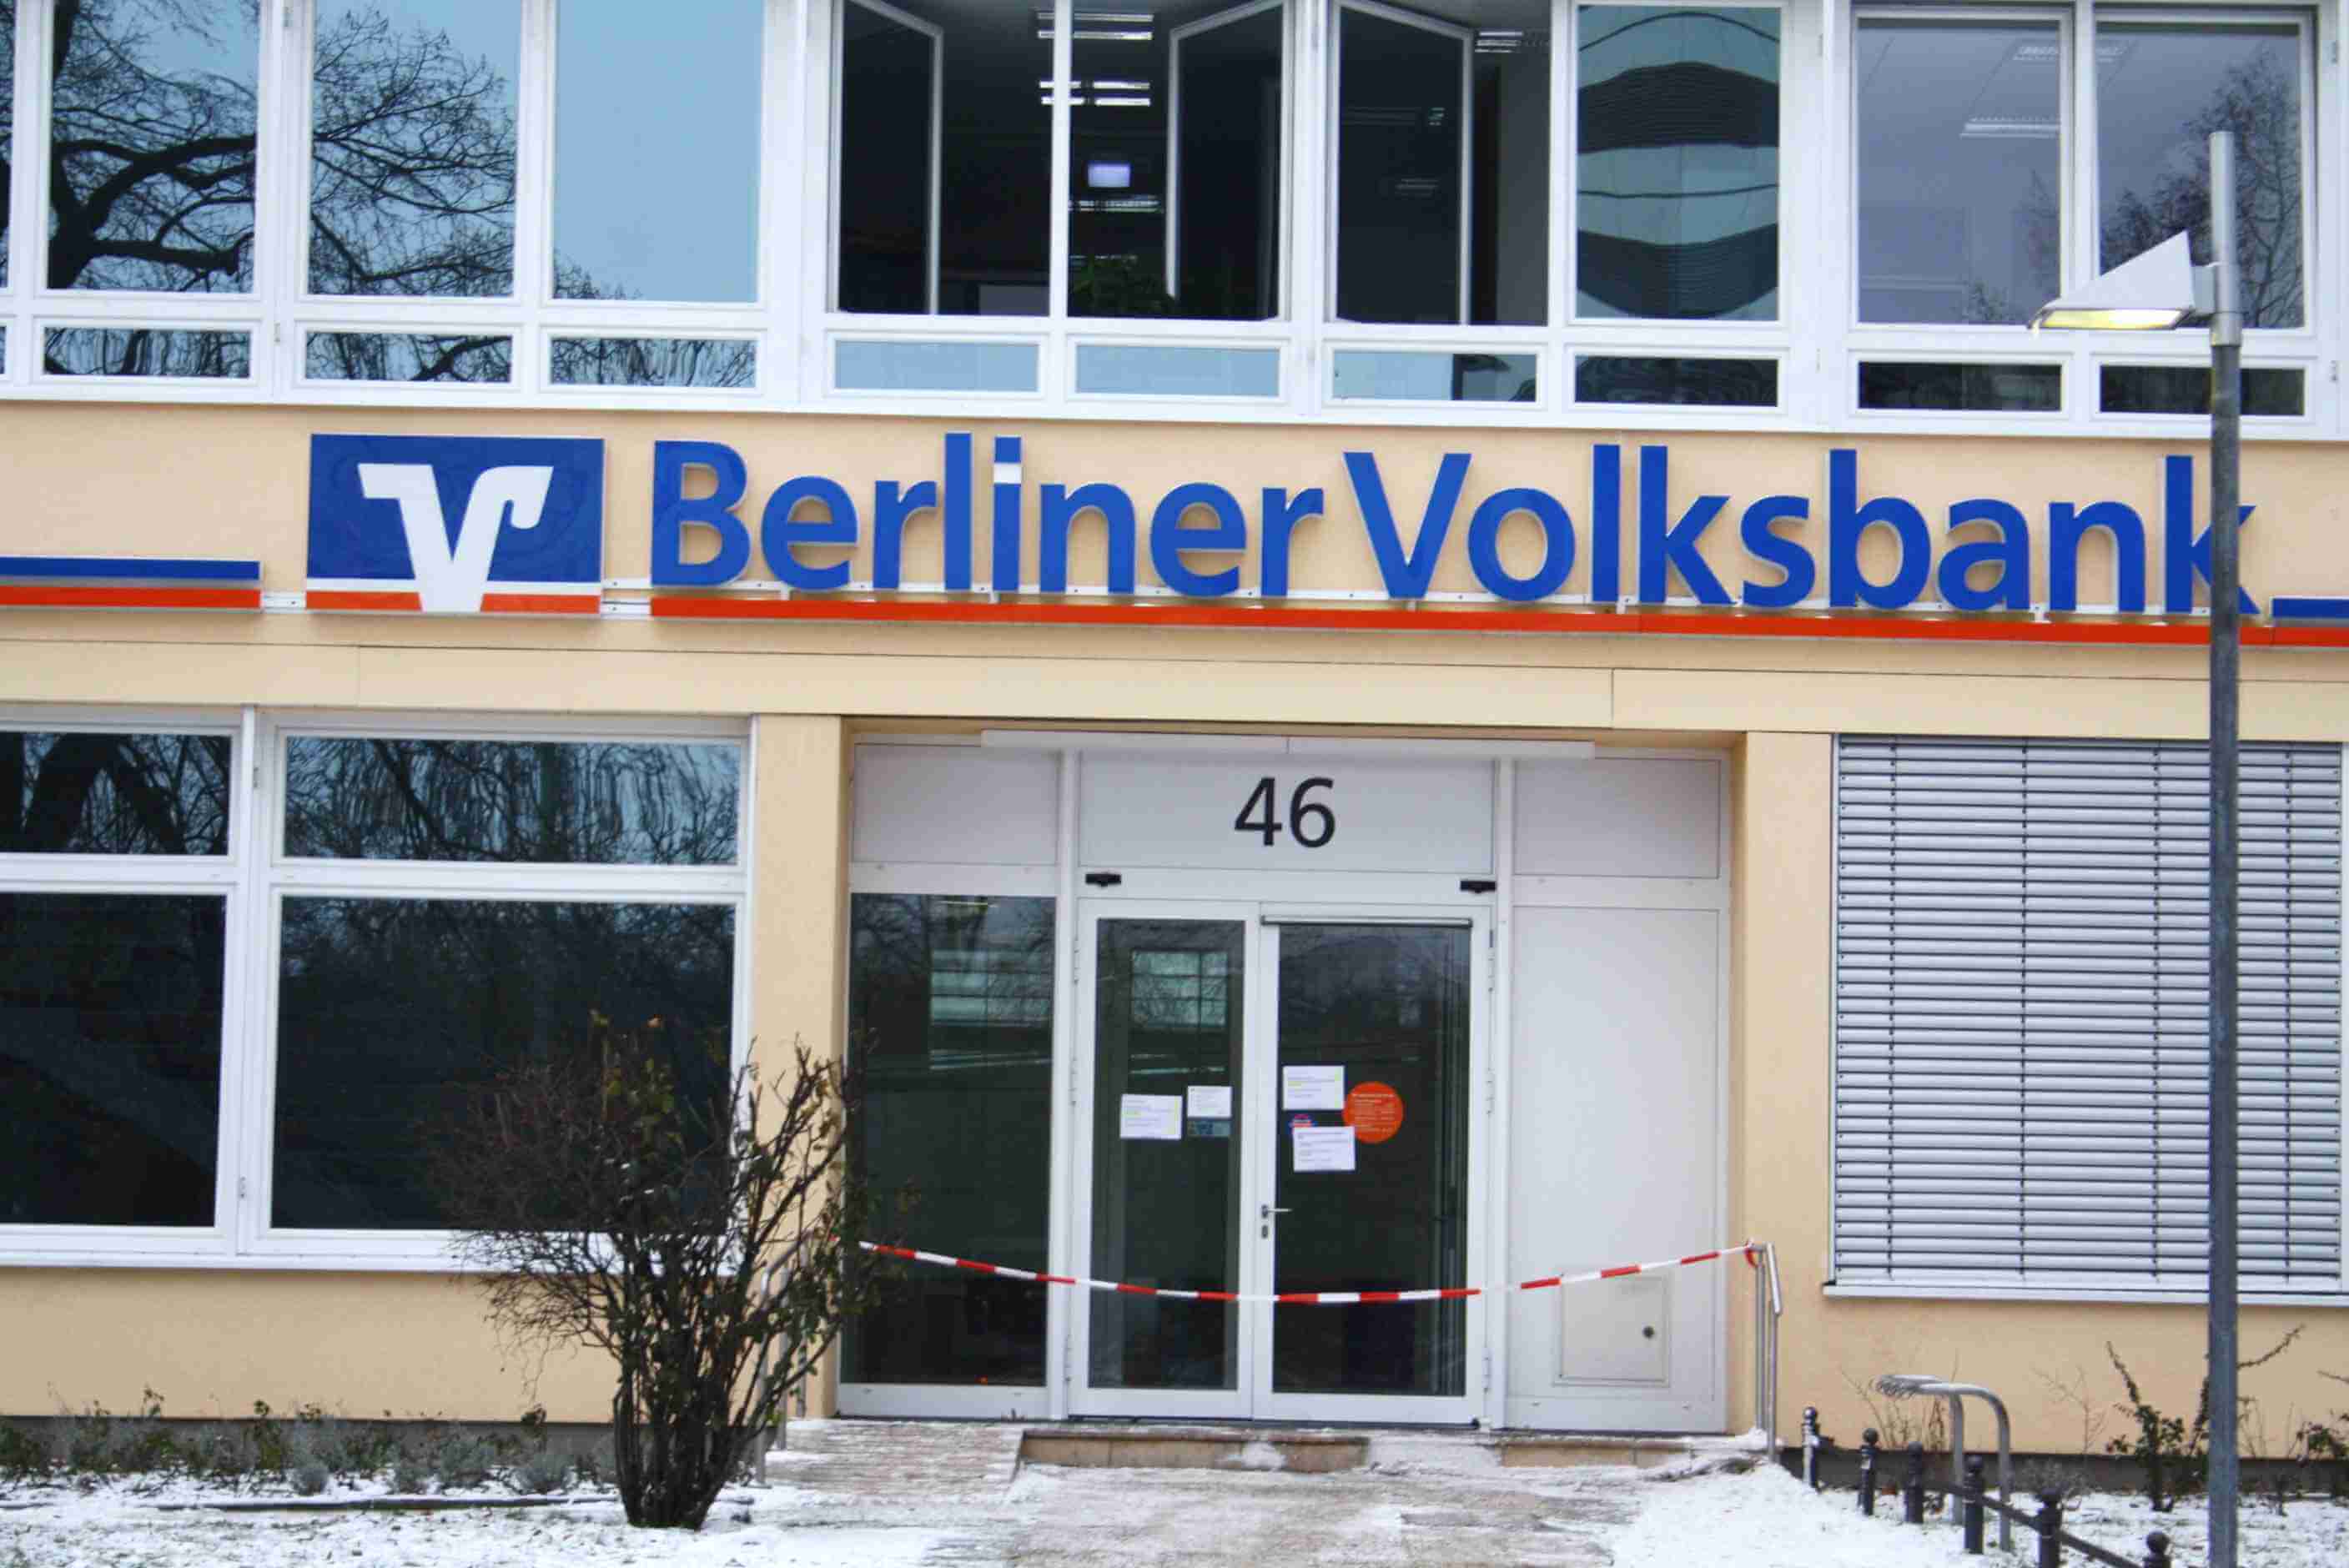 Spektakulärer Bankraub in Steglitz: Täter graben 30 Meter langen Tunnel